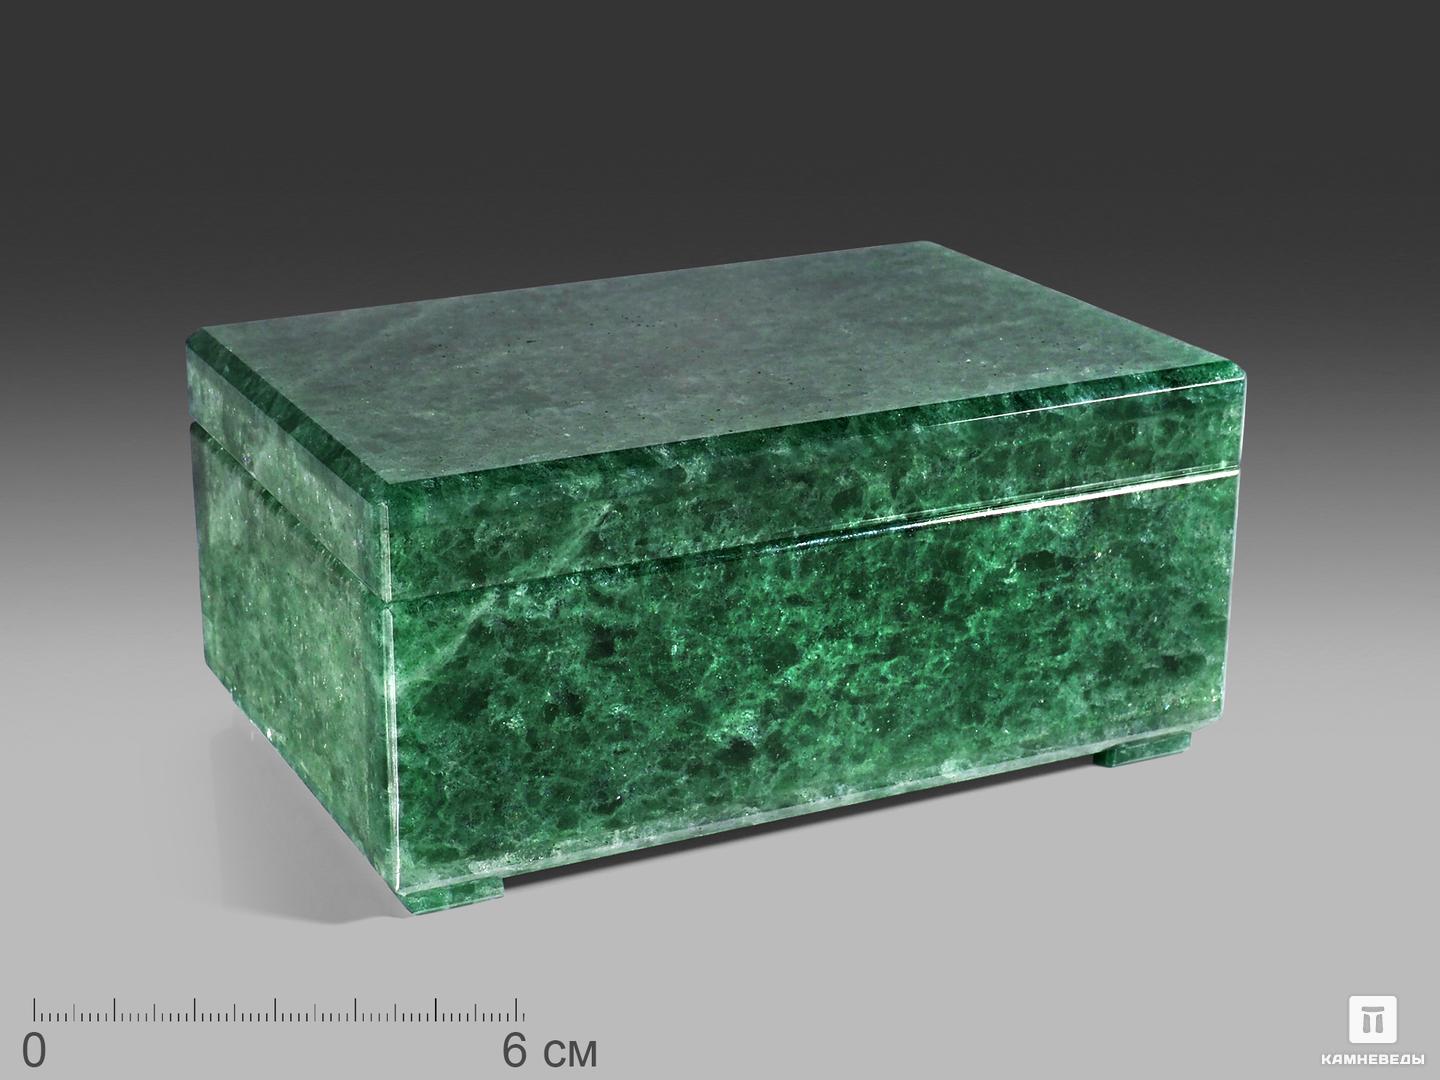 Шкатулка из зелёного авантюрина, 11,7х8,5х5,5 см, 24395, фото 1